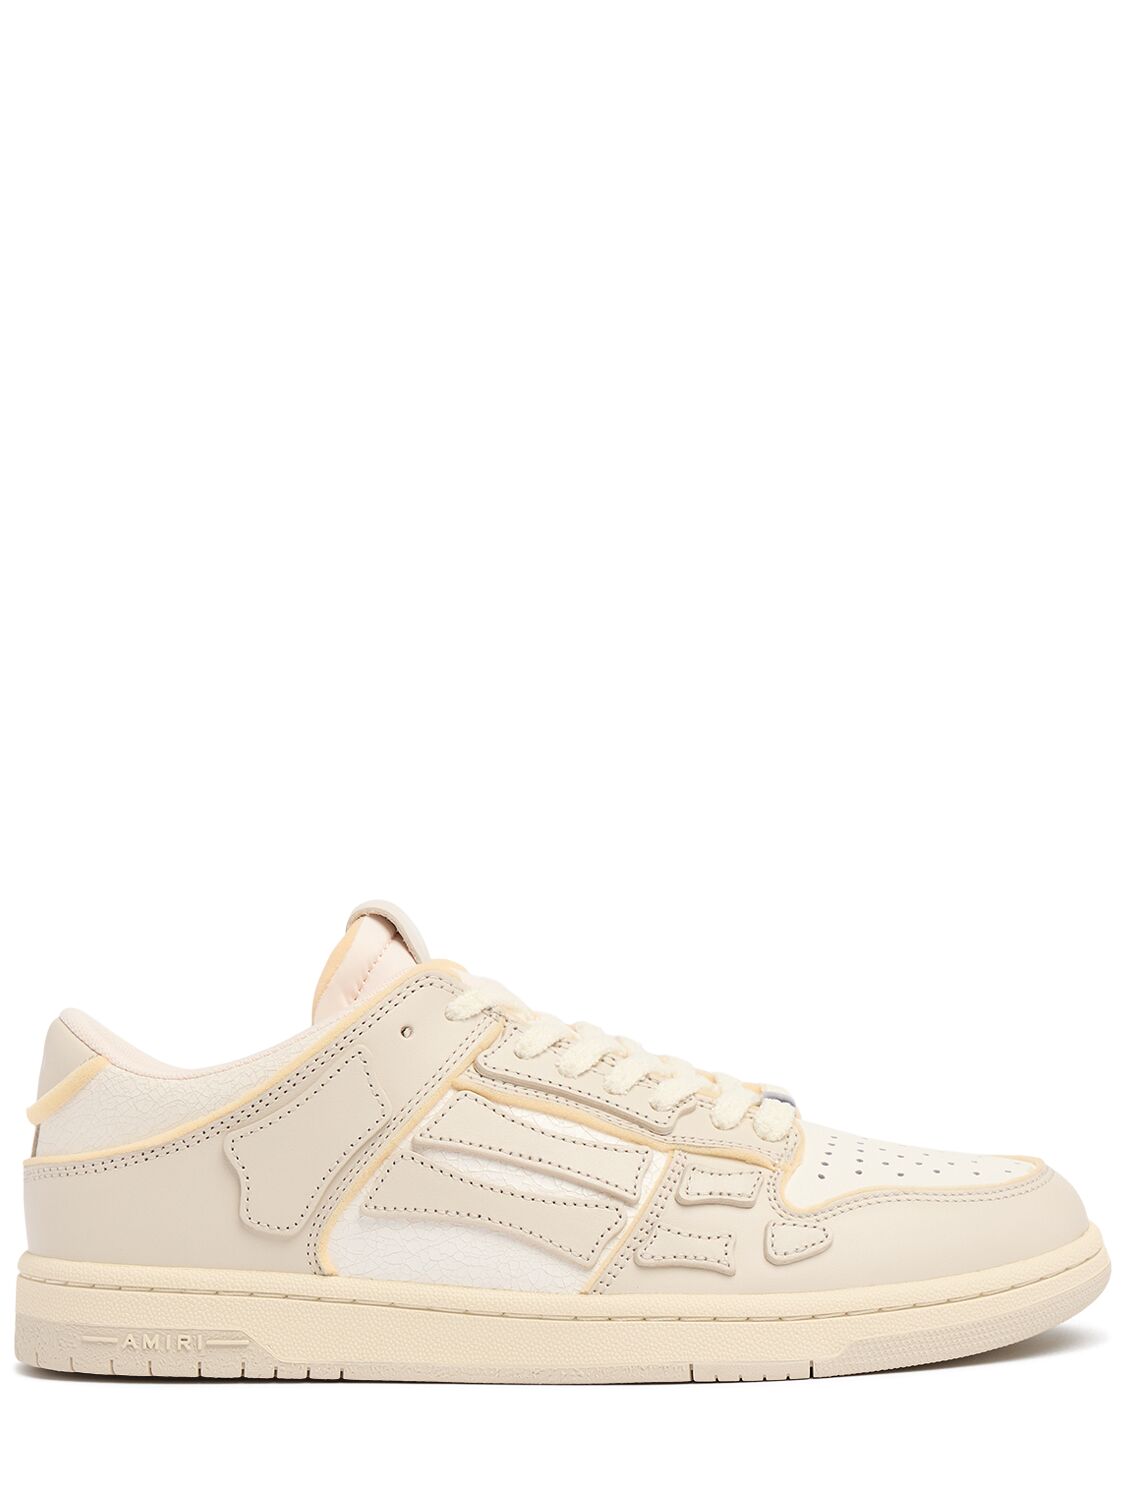 Amiri Collegiate Skel Top Low Sneakers In White/beige